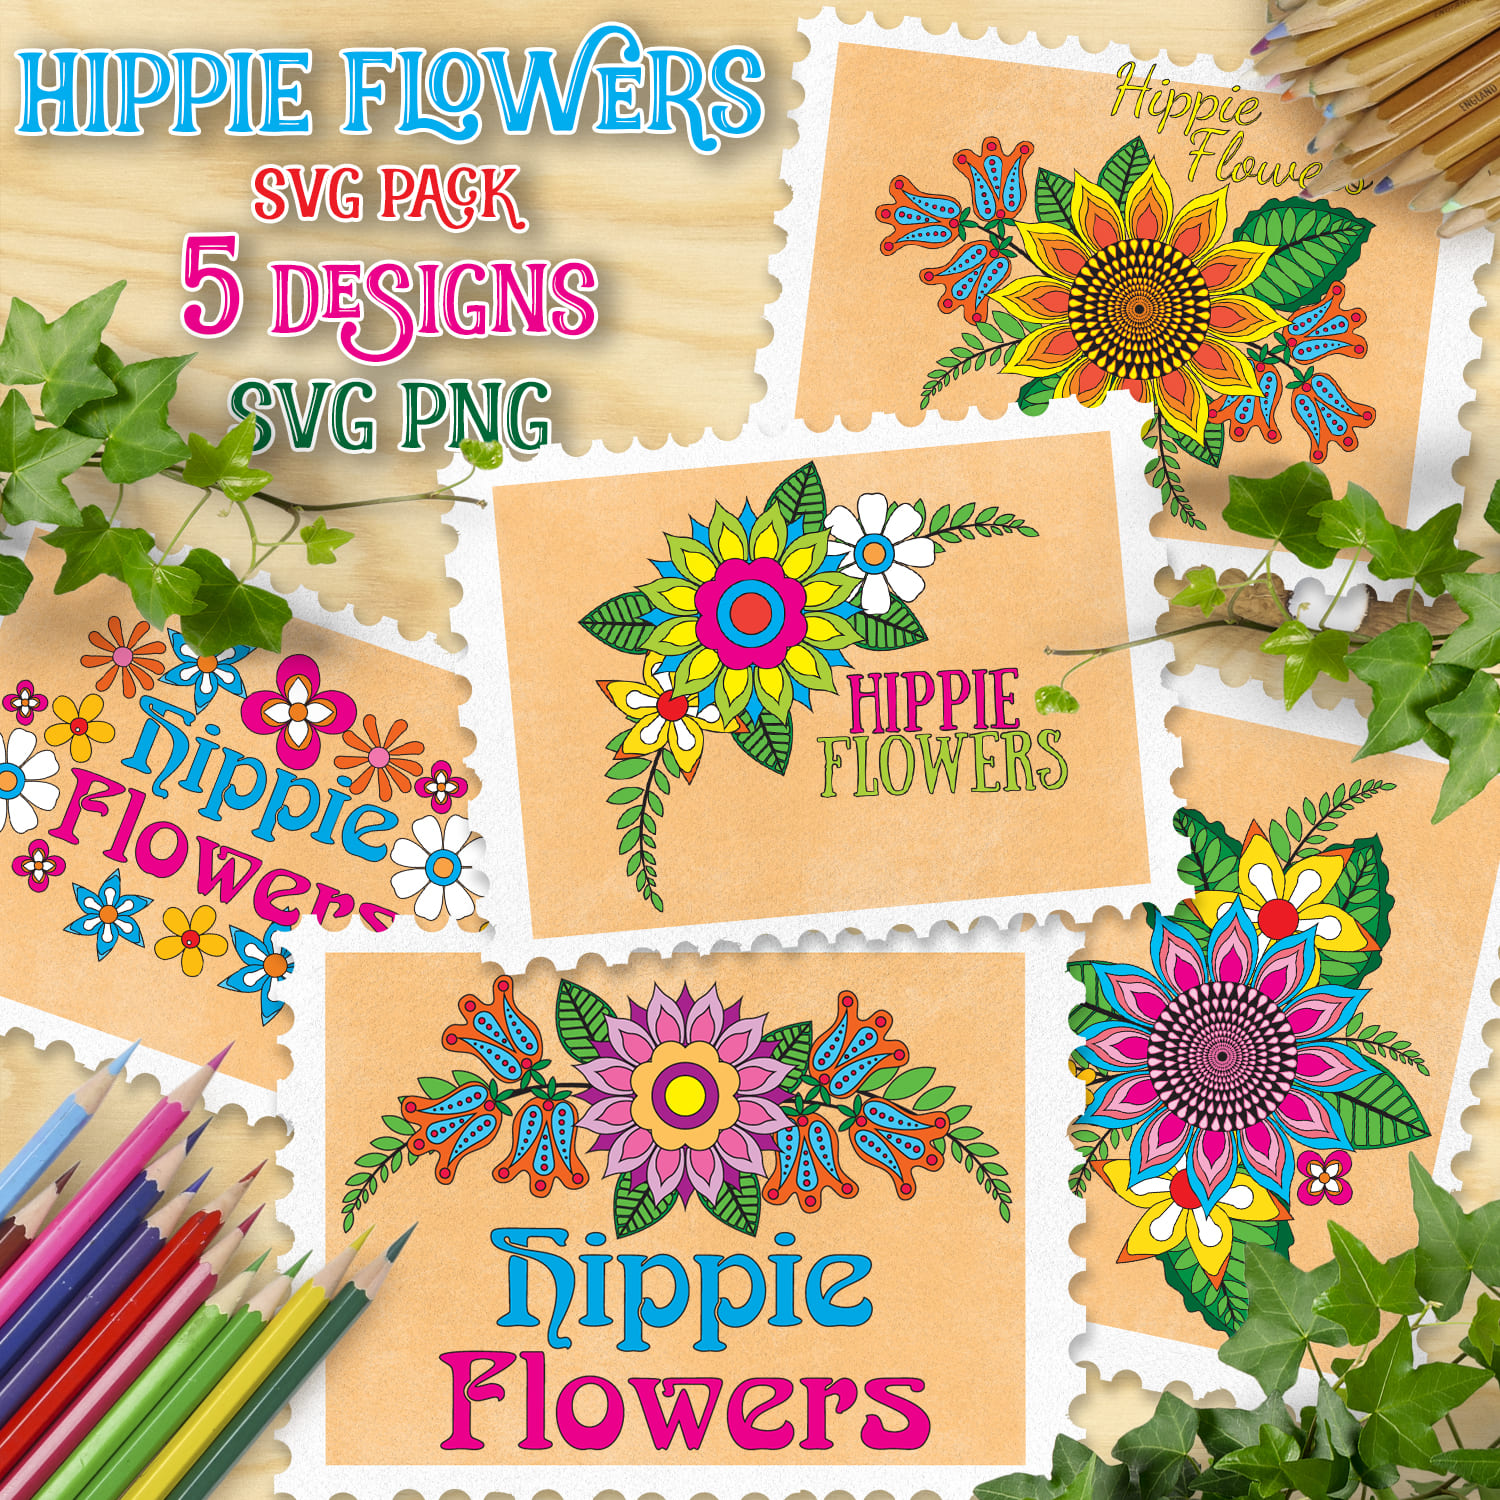 Hippie Flowers SVG T-shirt Designs Bundle - main image preview.